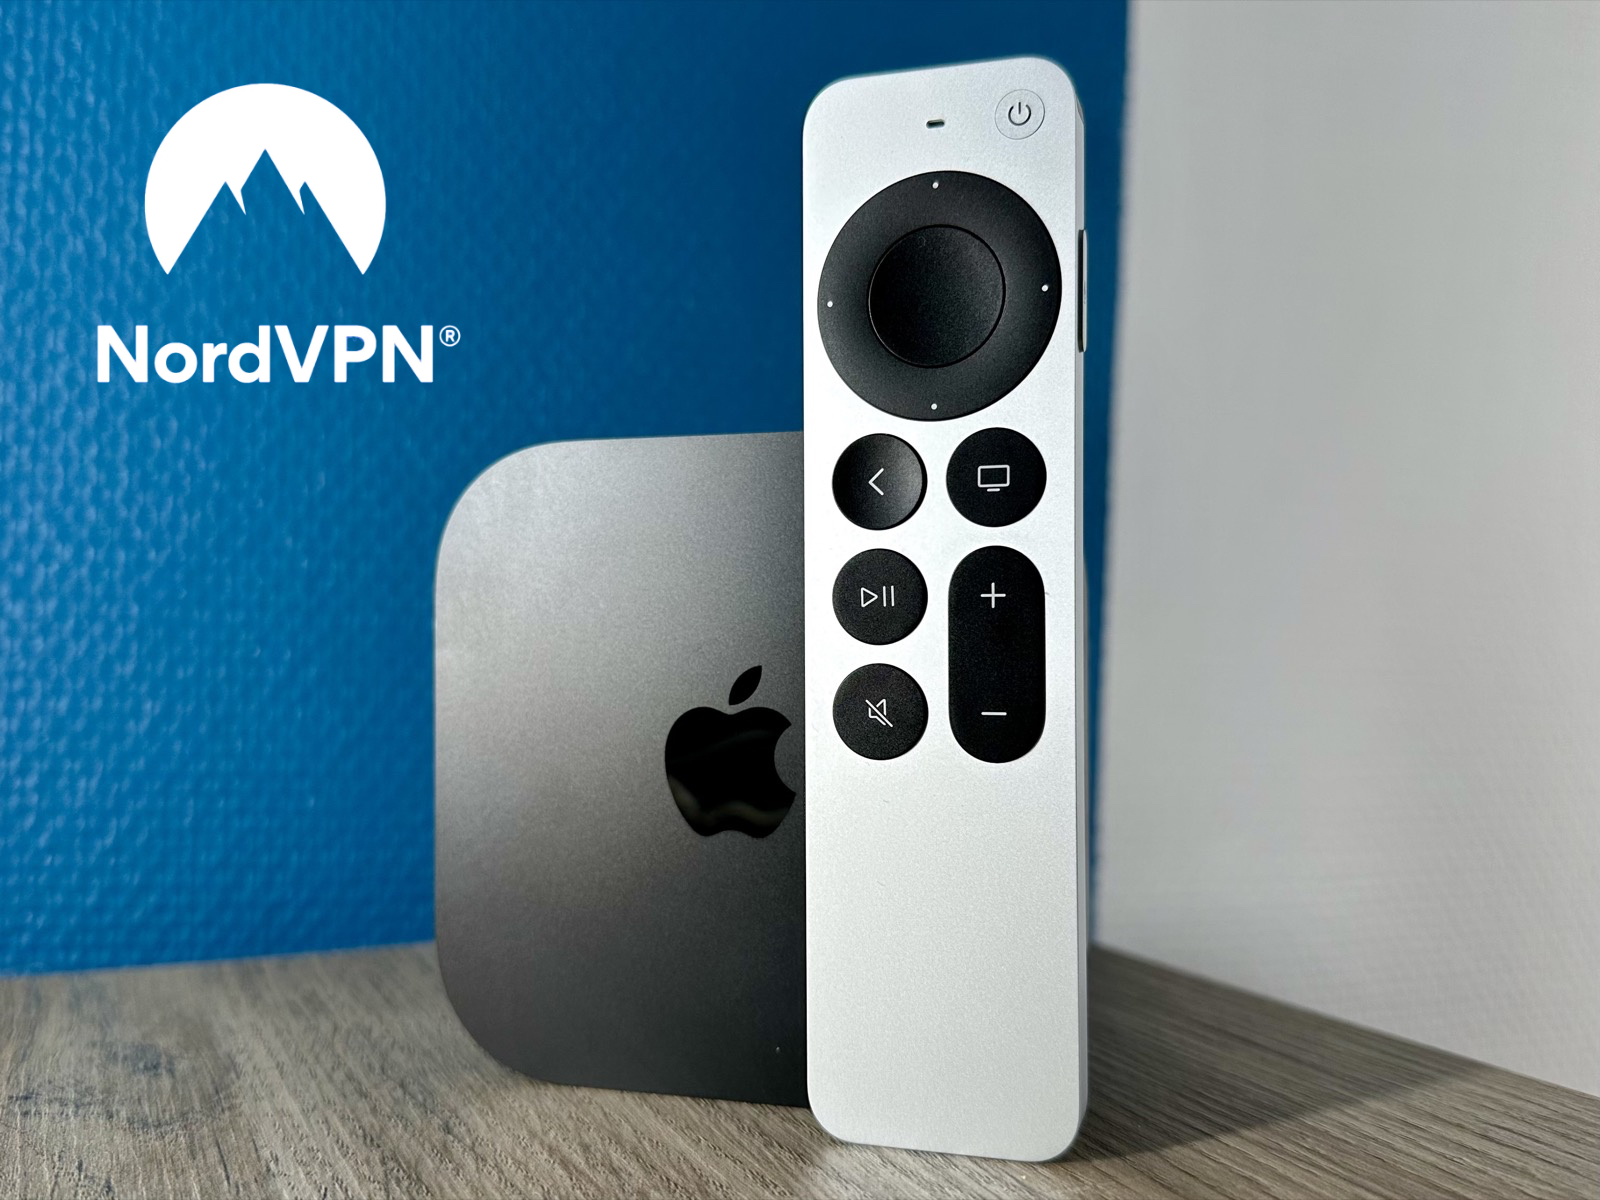 L'application NordVPN débarque à son tour sur Apple TV